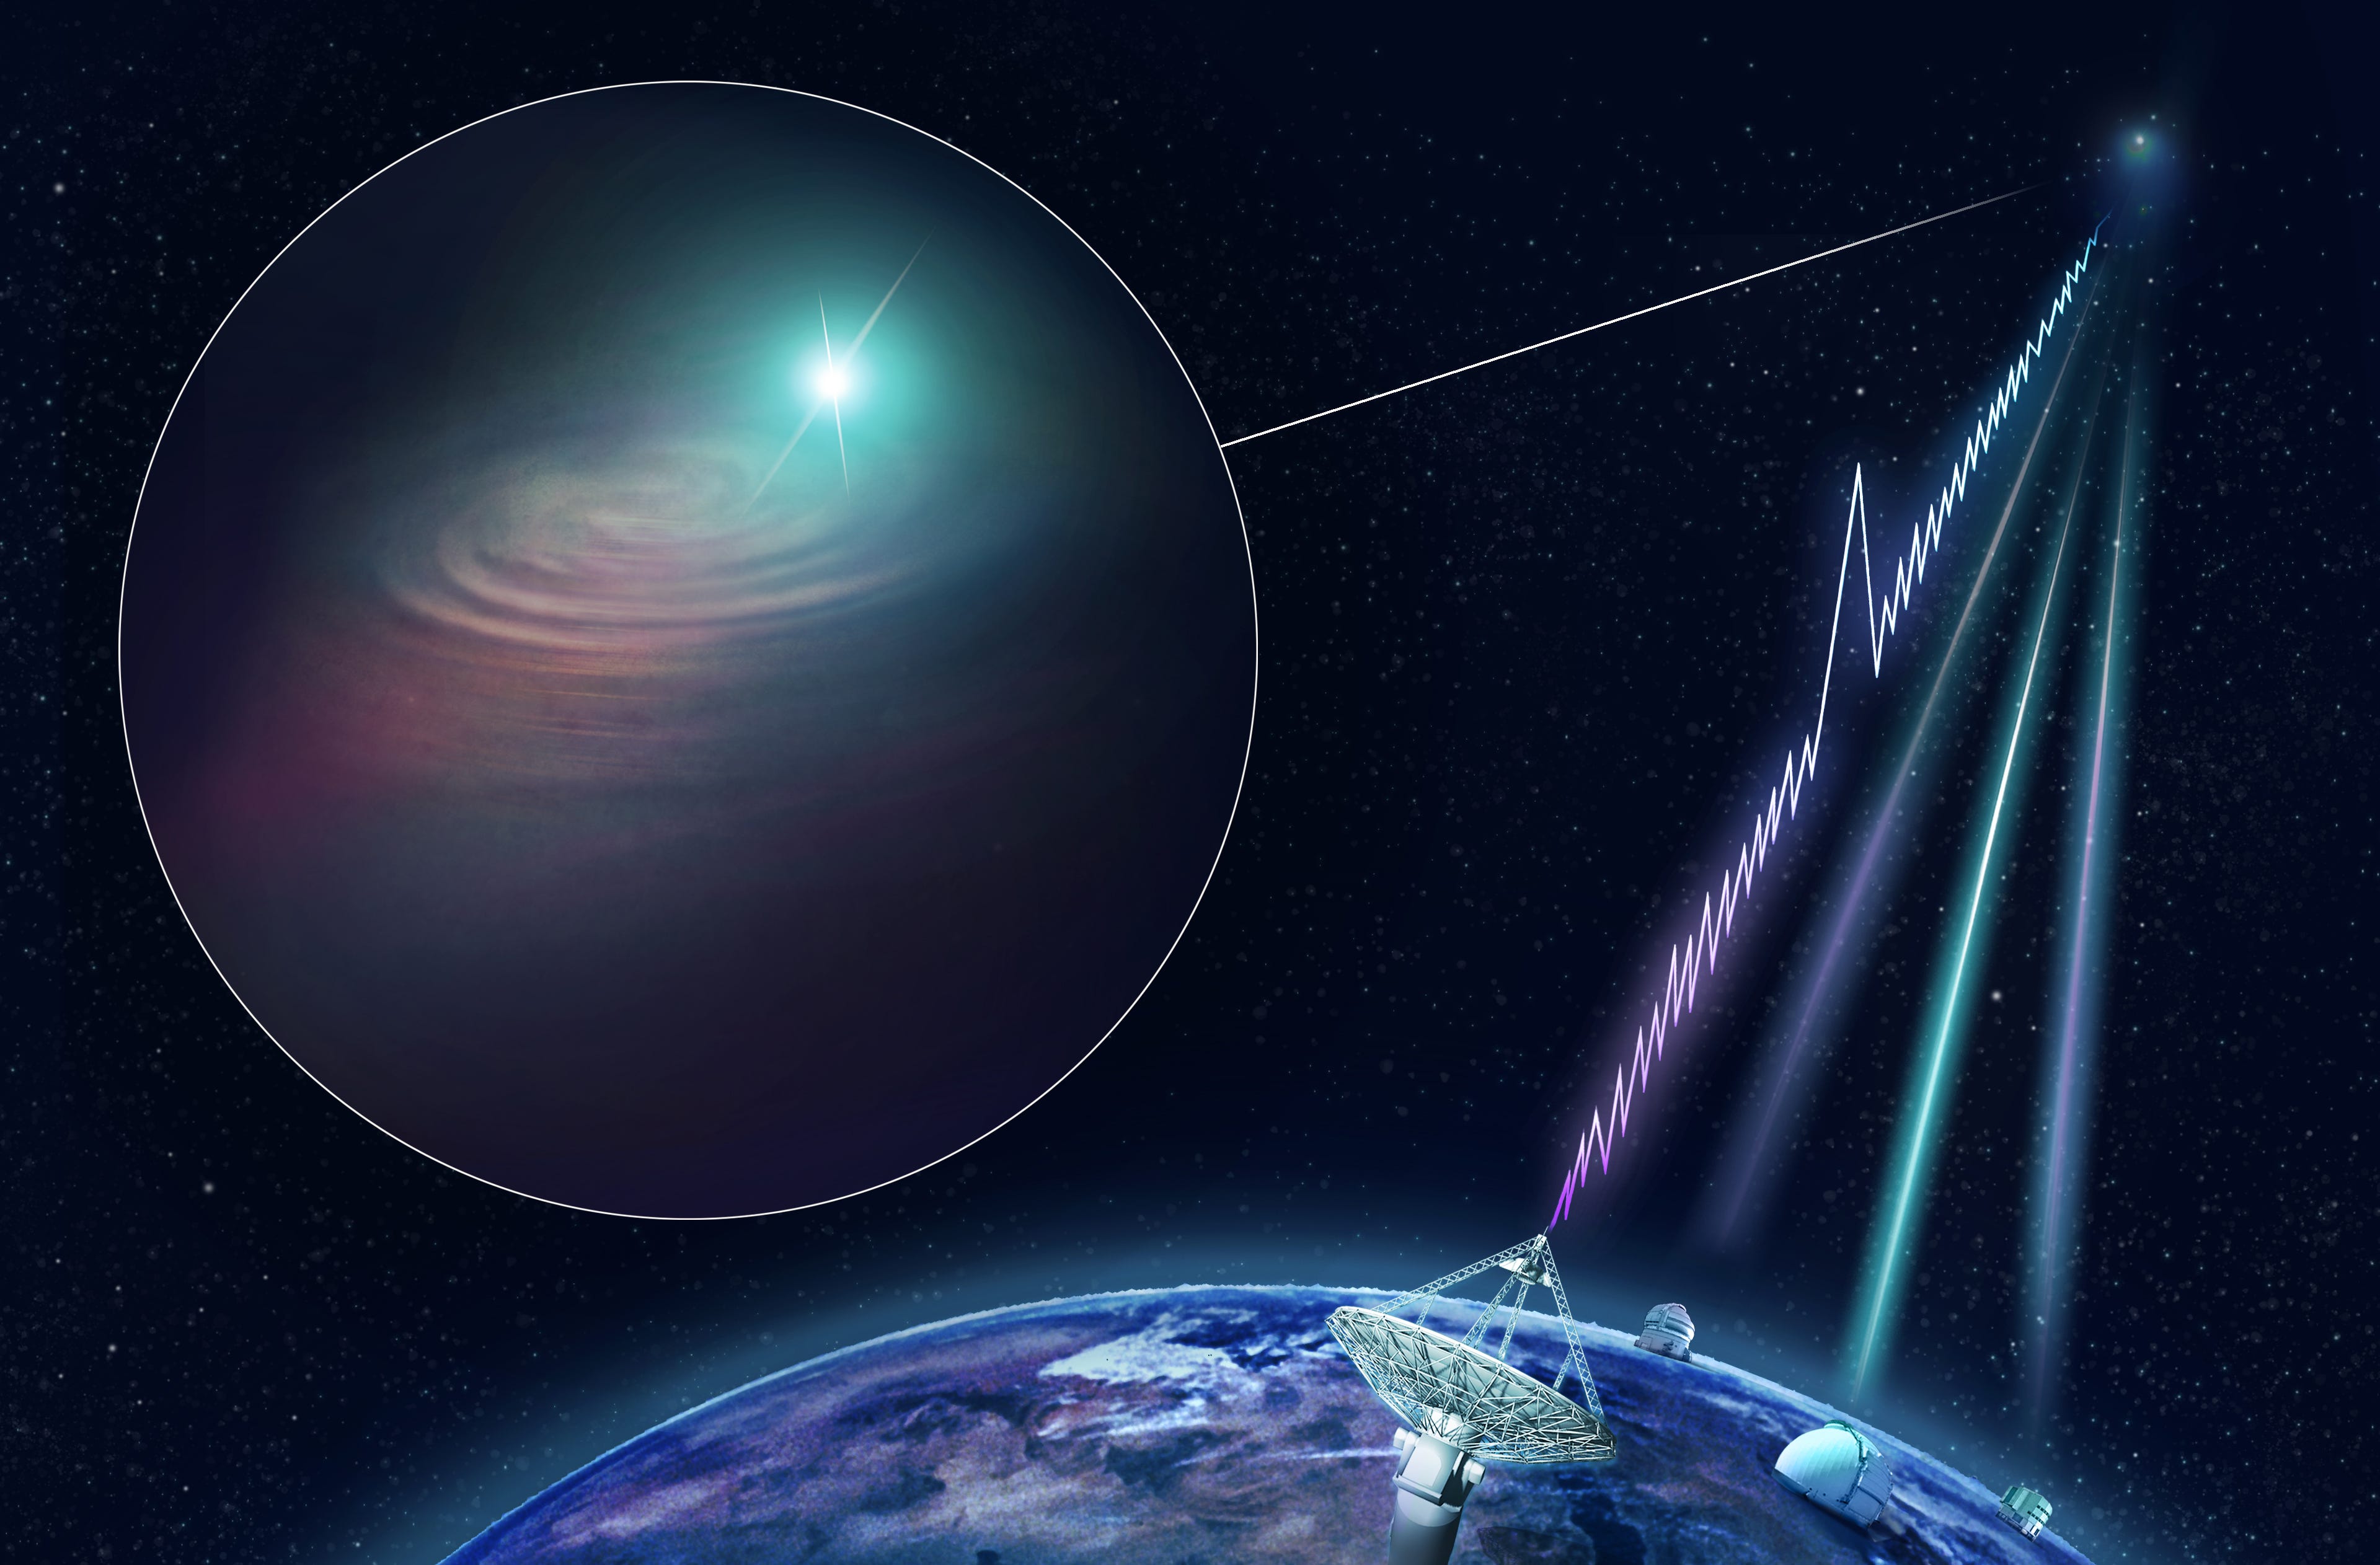 160光年，银河系中心方向某个行星，发出类似智慧生命的无线电